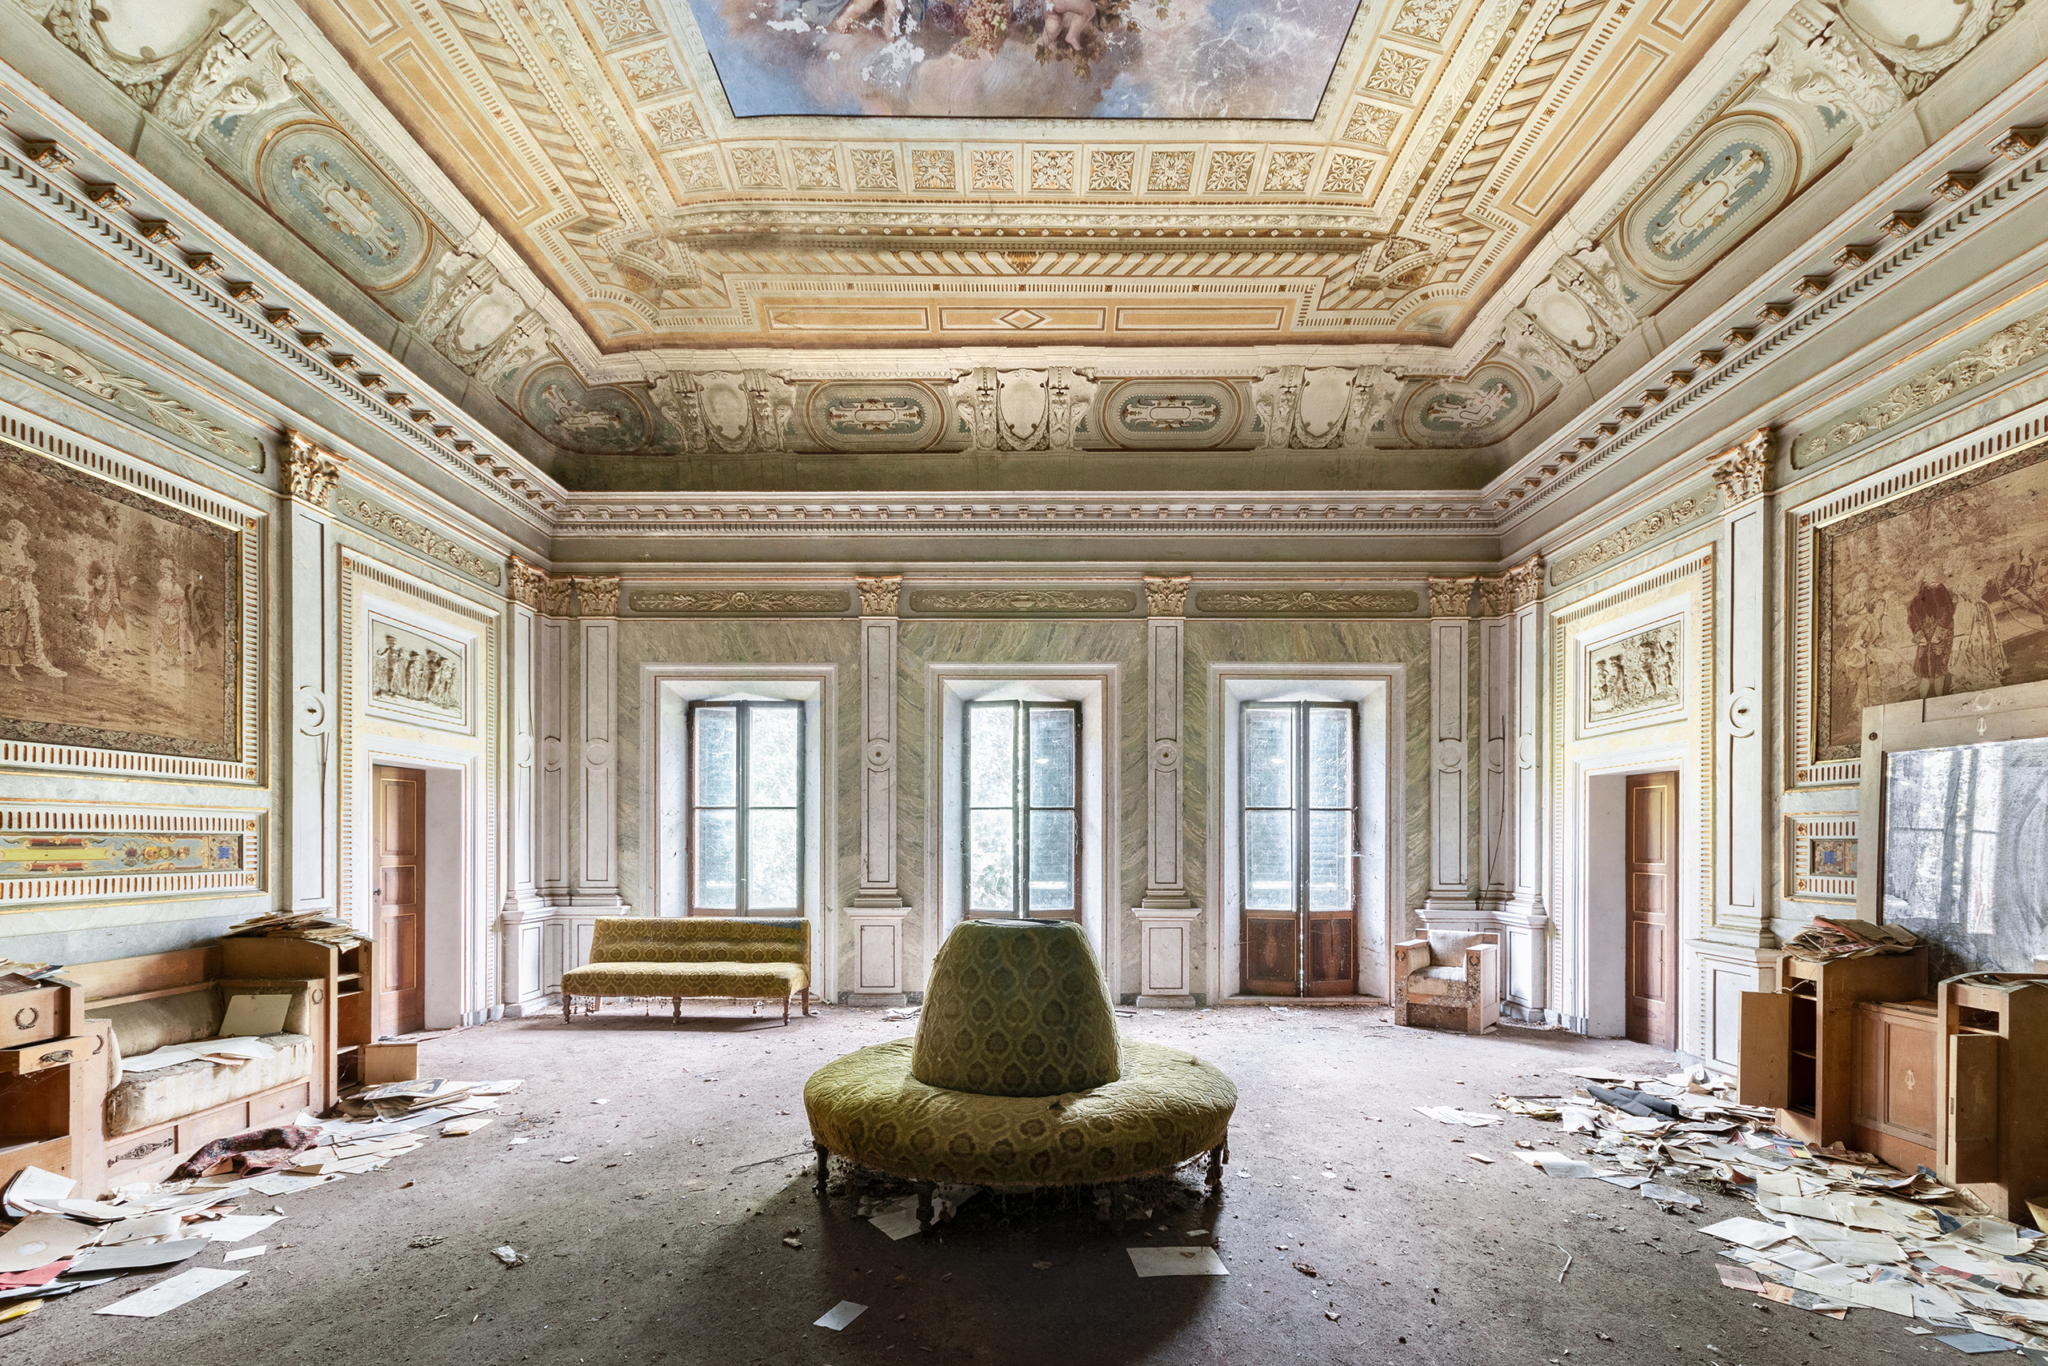 Segreti - Abandoned villa, Italy